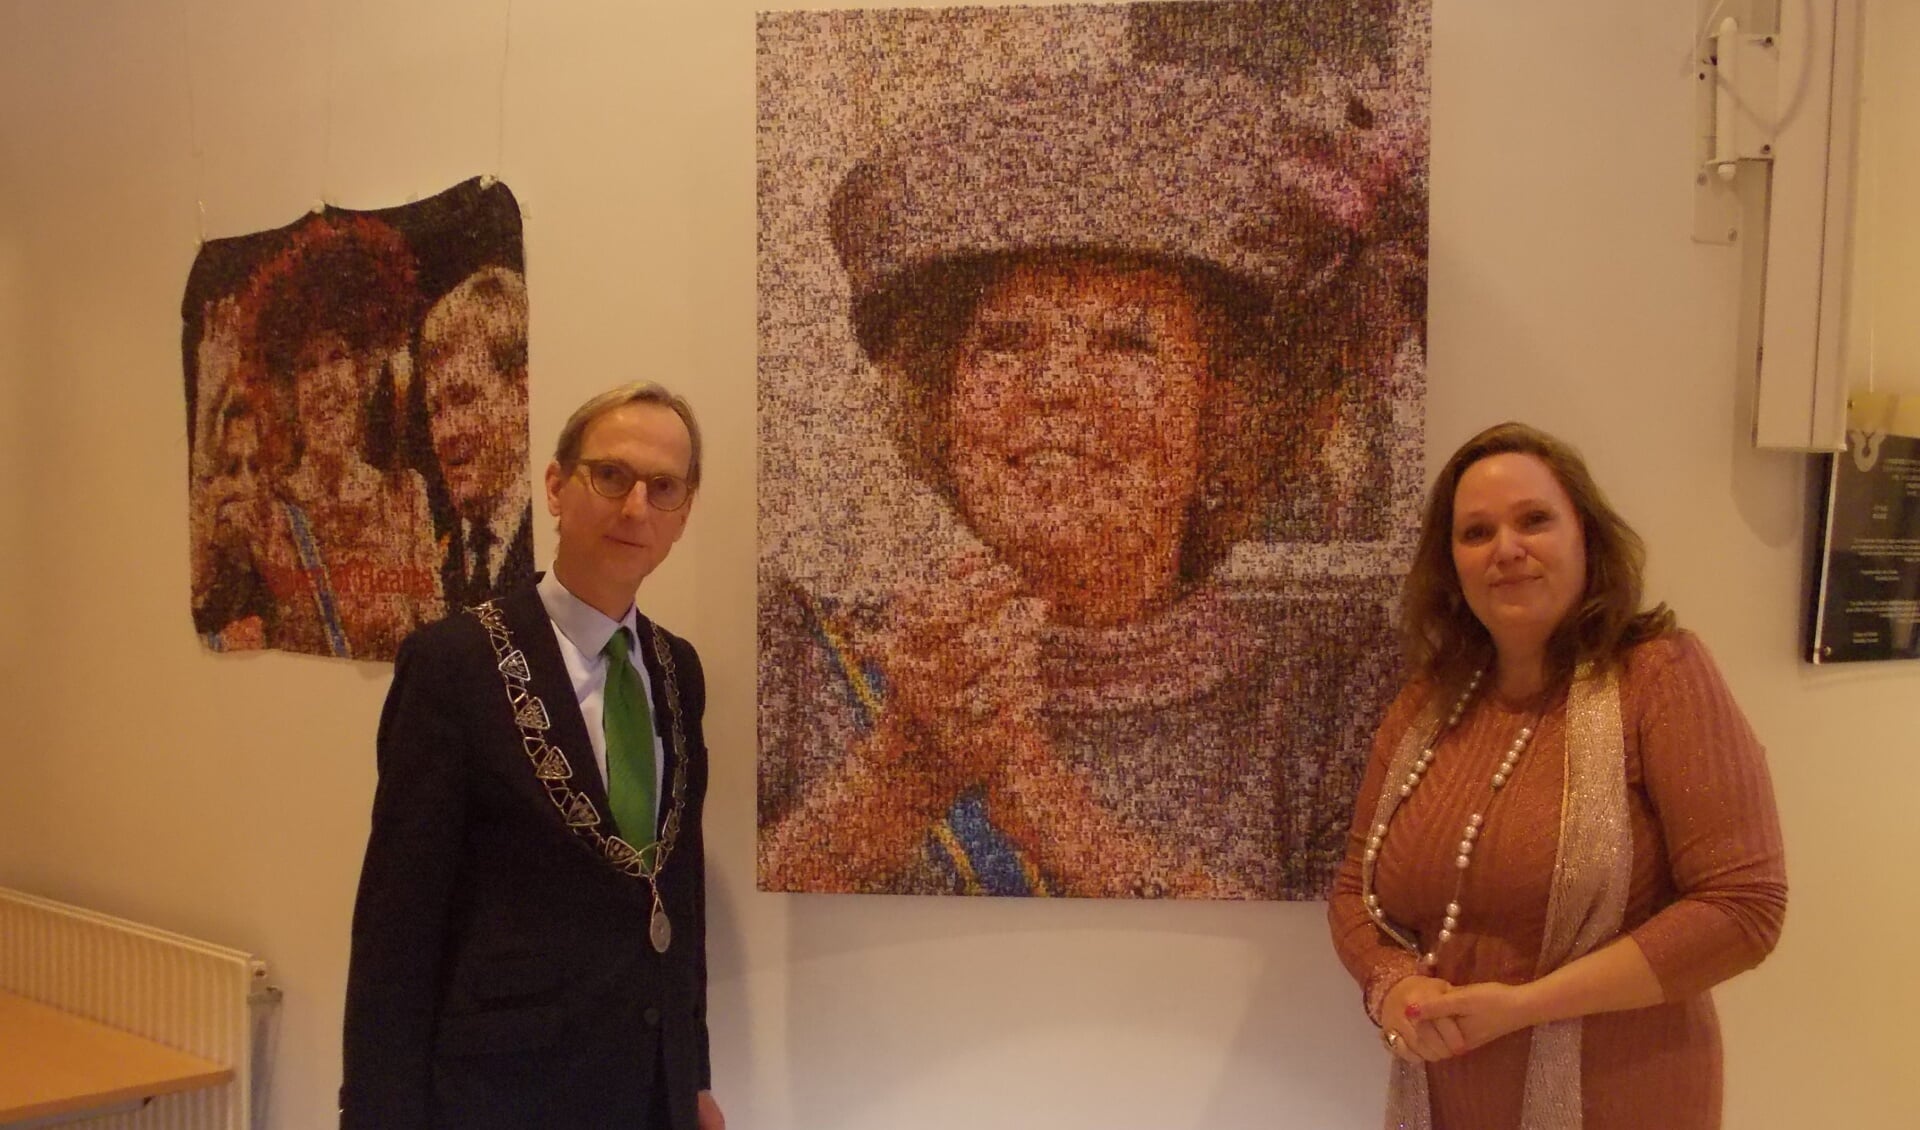 De burgemeester en Monique van der Kamp bij het portret van prinses en voormalig koningin Beatrix. | Foto: Piet de Boer)